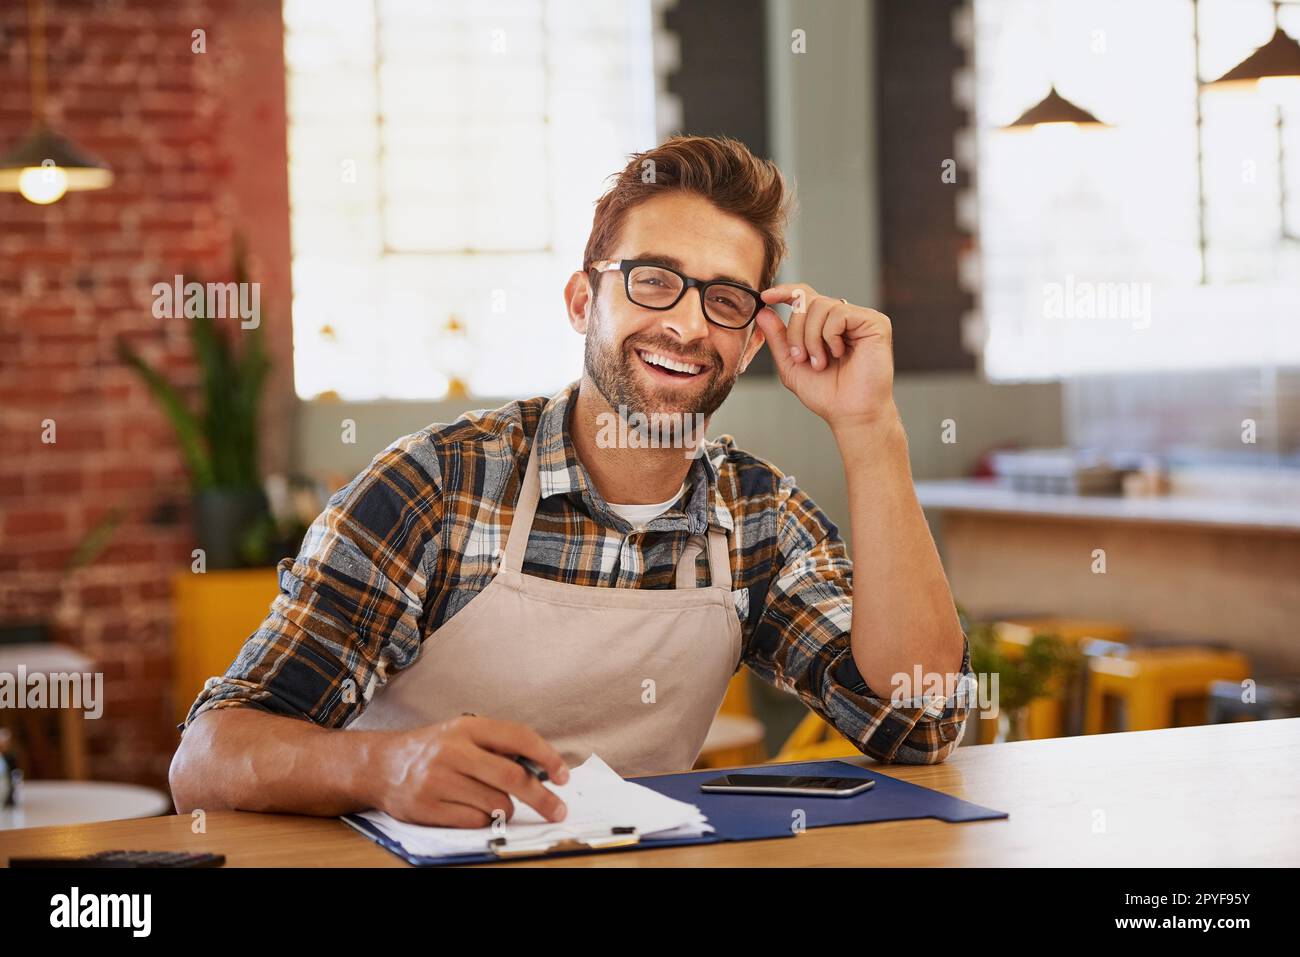 Ich bin ein Champion bei der Verwaltung. Porträt eines glücklichen jungen Geschäftsbesitzers, der an einem Tisch in seinem Café als Verwalter tätig ist. Stockfoto